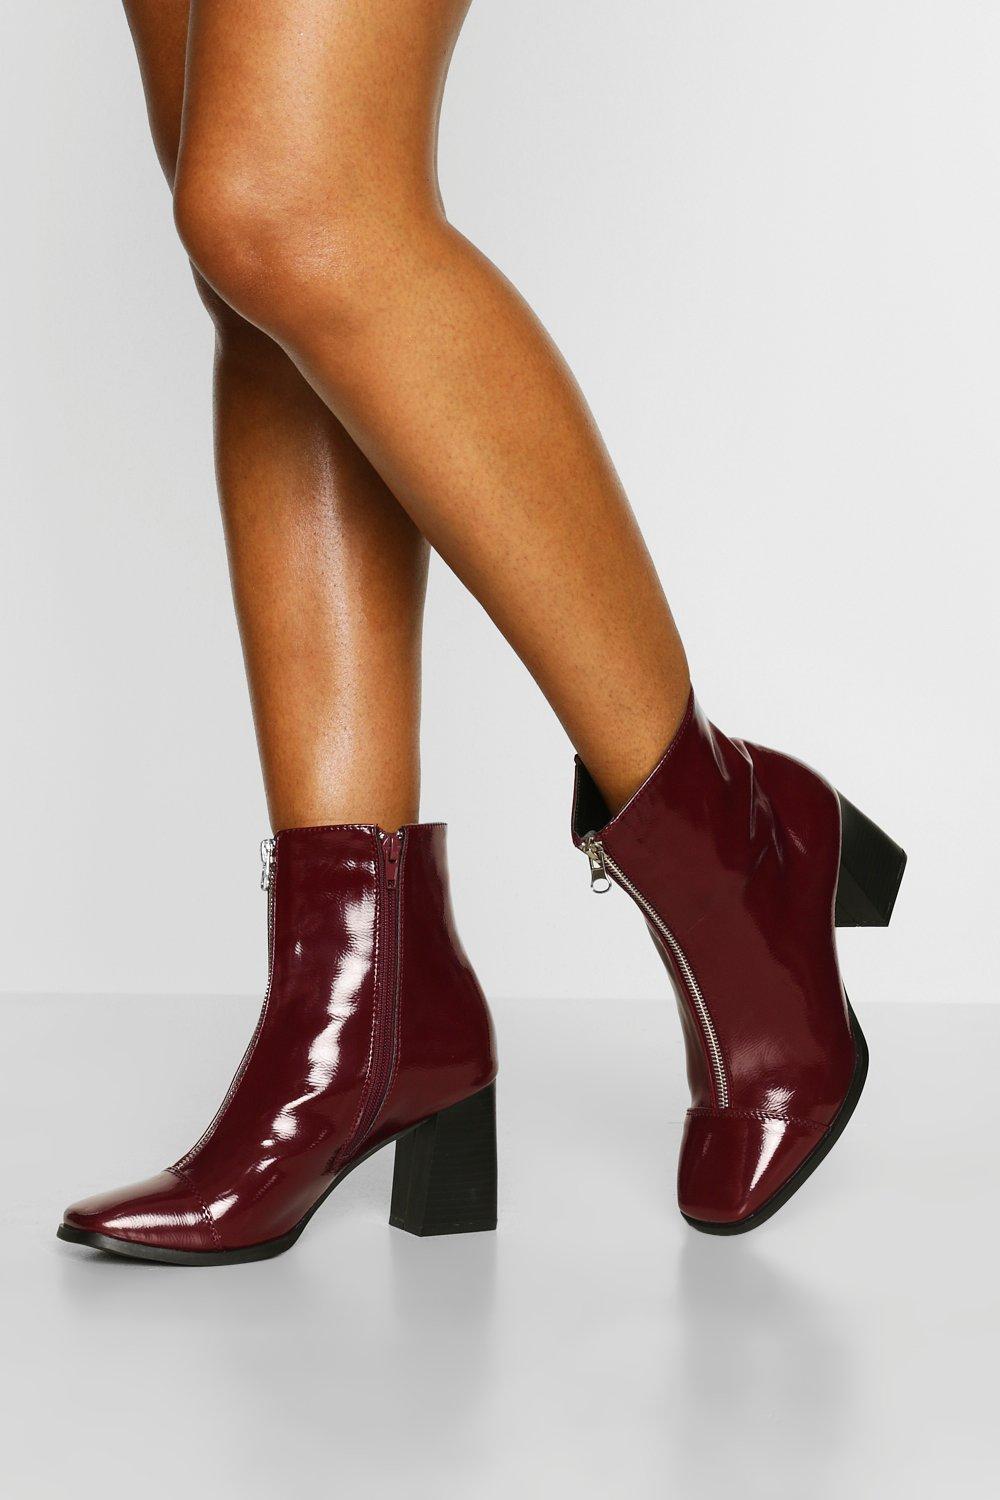 maroon block heel shoes